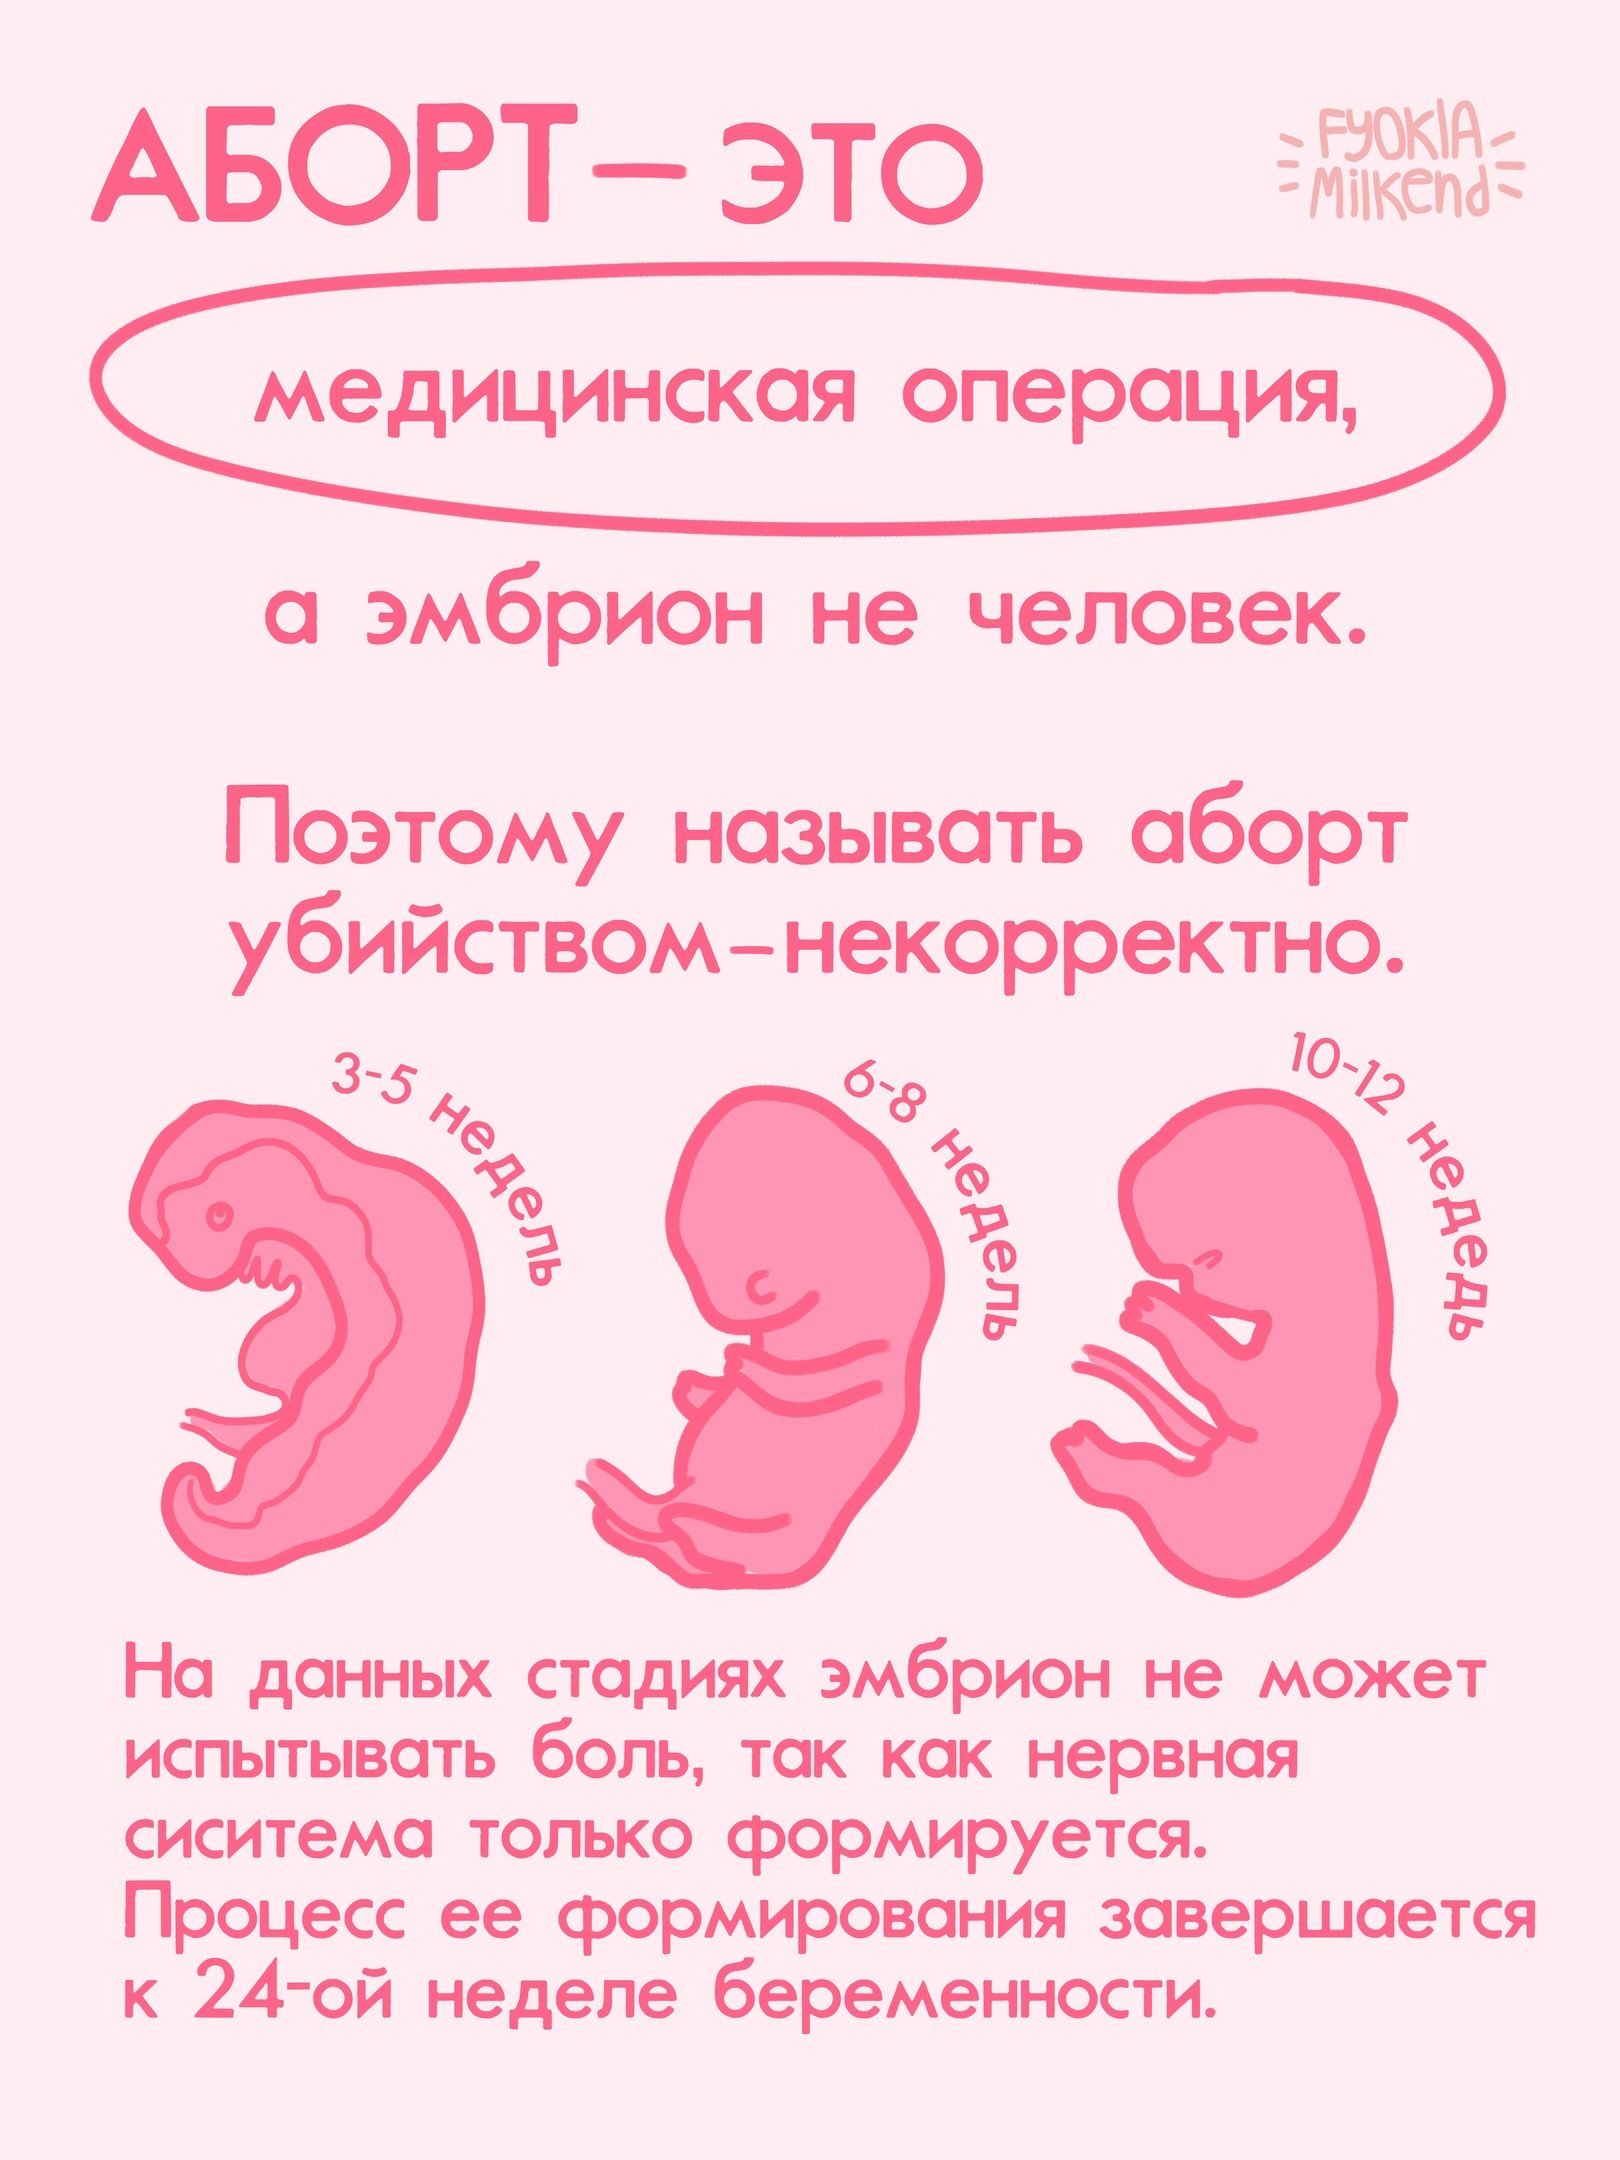 10 недель беременности сколько это. Борт. Прерывание беременности - аборт. Недели беременности по месяцам. Прерывание беременности до 12 недель и после.